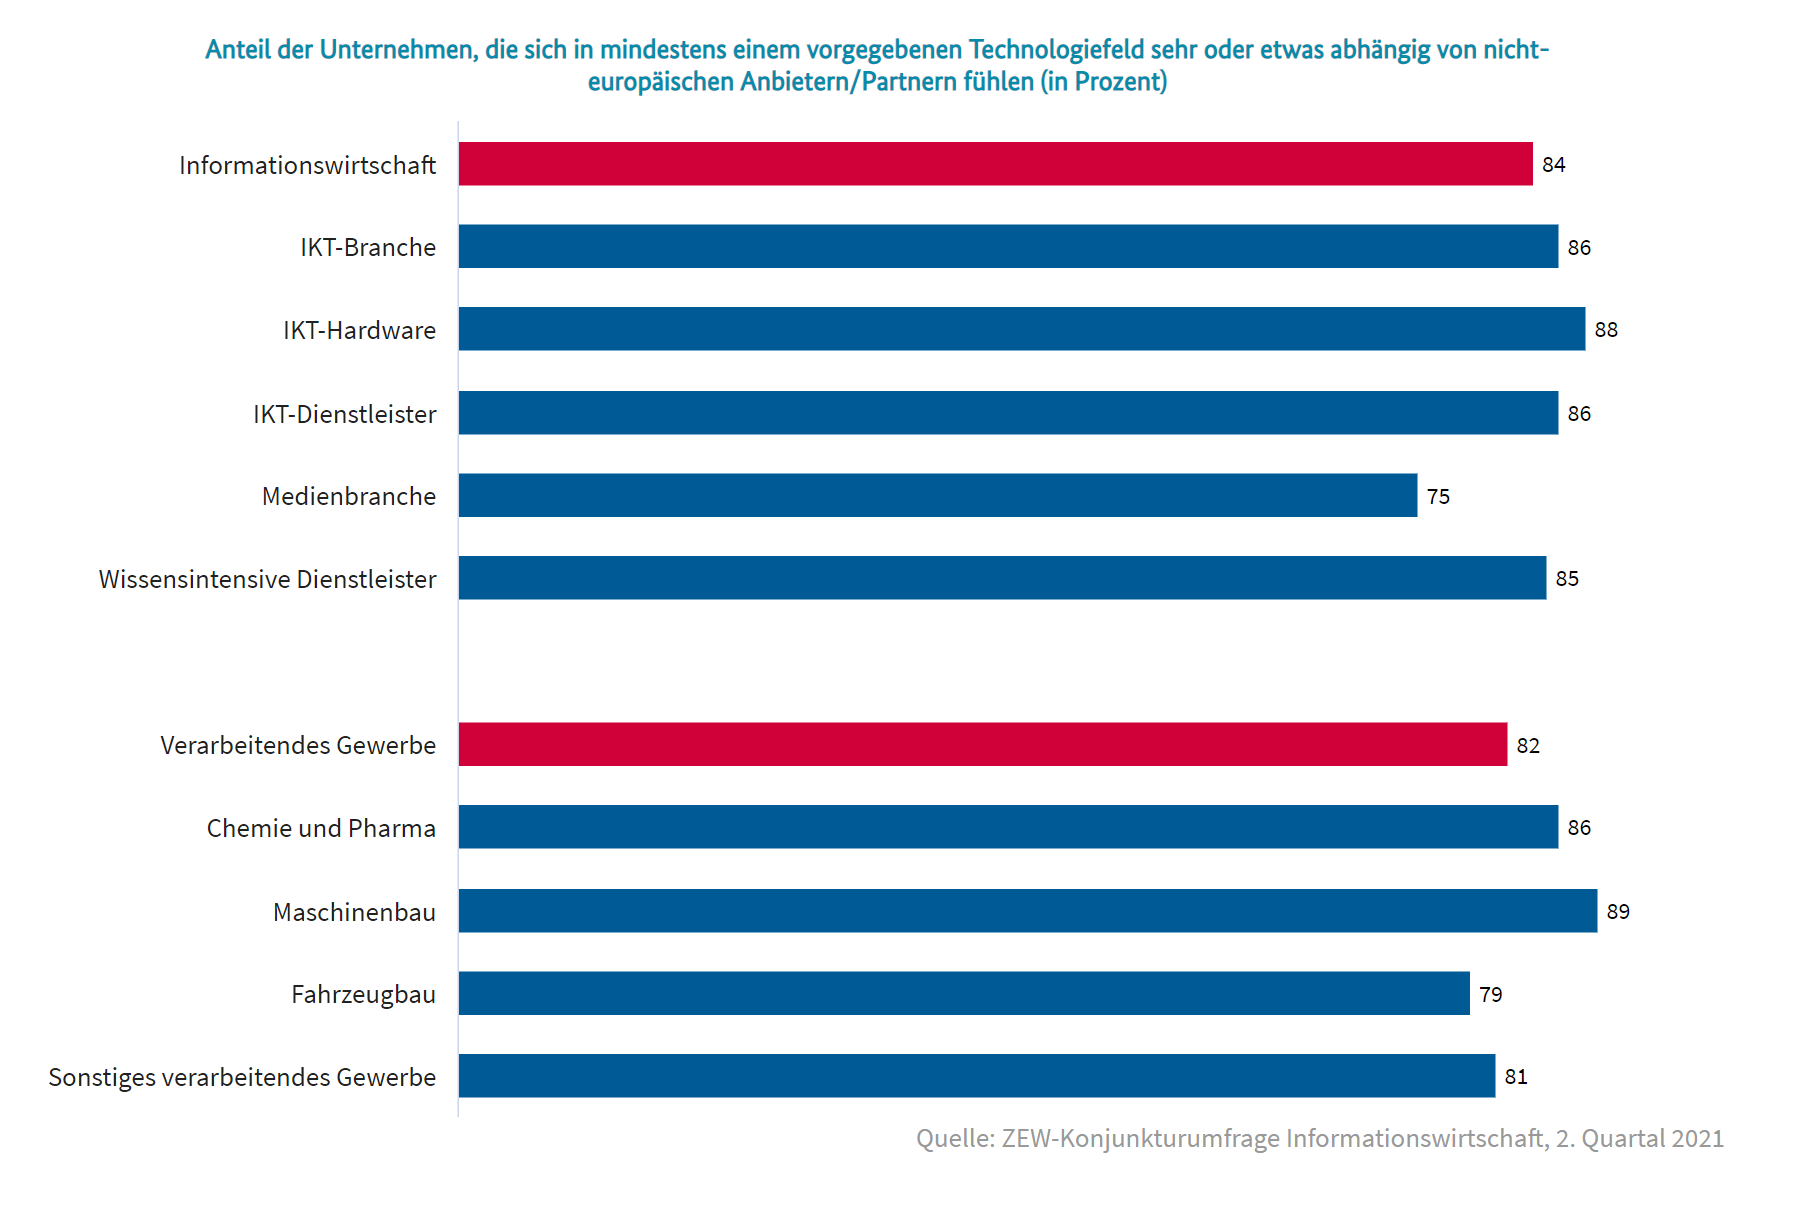 Anteil der Unternehmen, die sich in mindestens einem vorgegebenen Technologiefeld sehr oder etwas abhängig von nicht-europäischen Anbietern/Partnern fühlen (in Prozent)